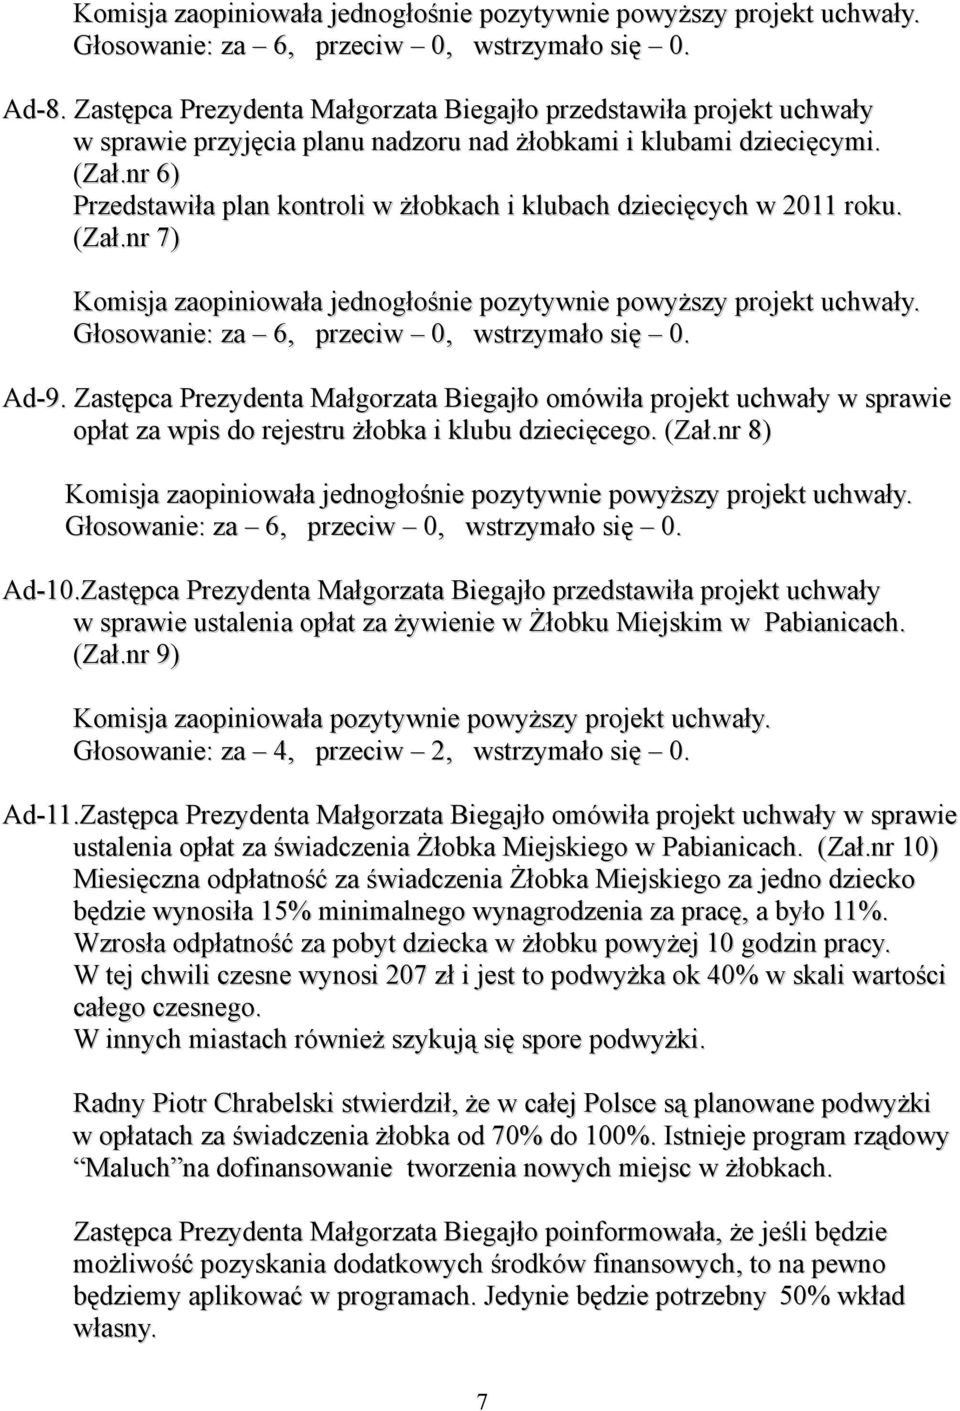 Zastępca Prezydenta Małgorzata Biegajło omówiła projekt uchwały w sprawie opłat za wpis do rejestru żłobka i klubu dziecięcego. (Zał.nr 8) Ad-10.